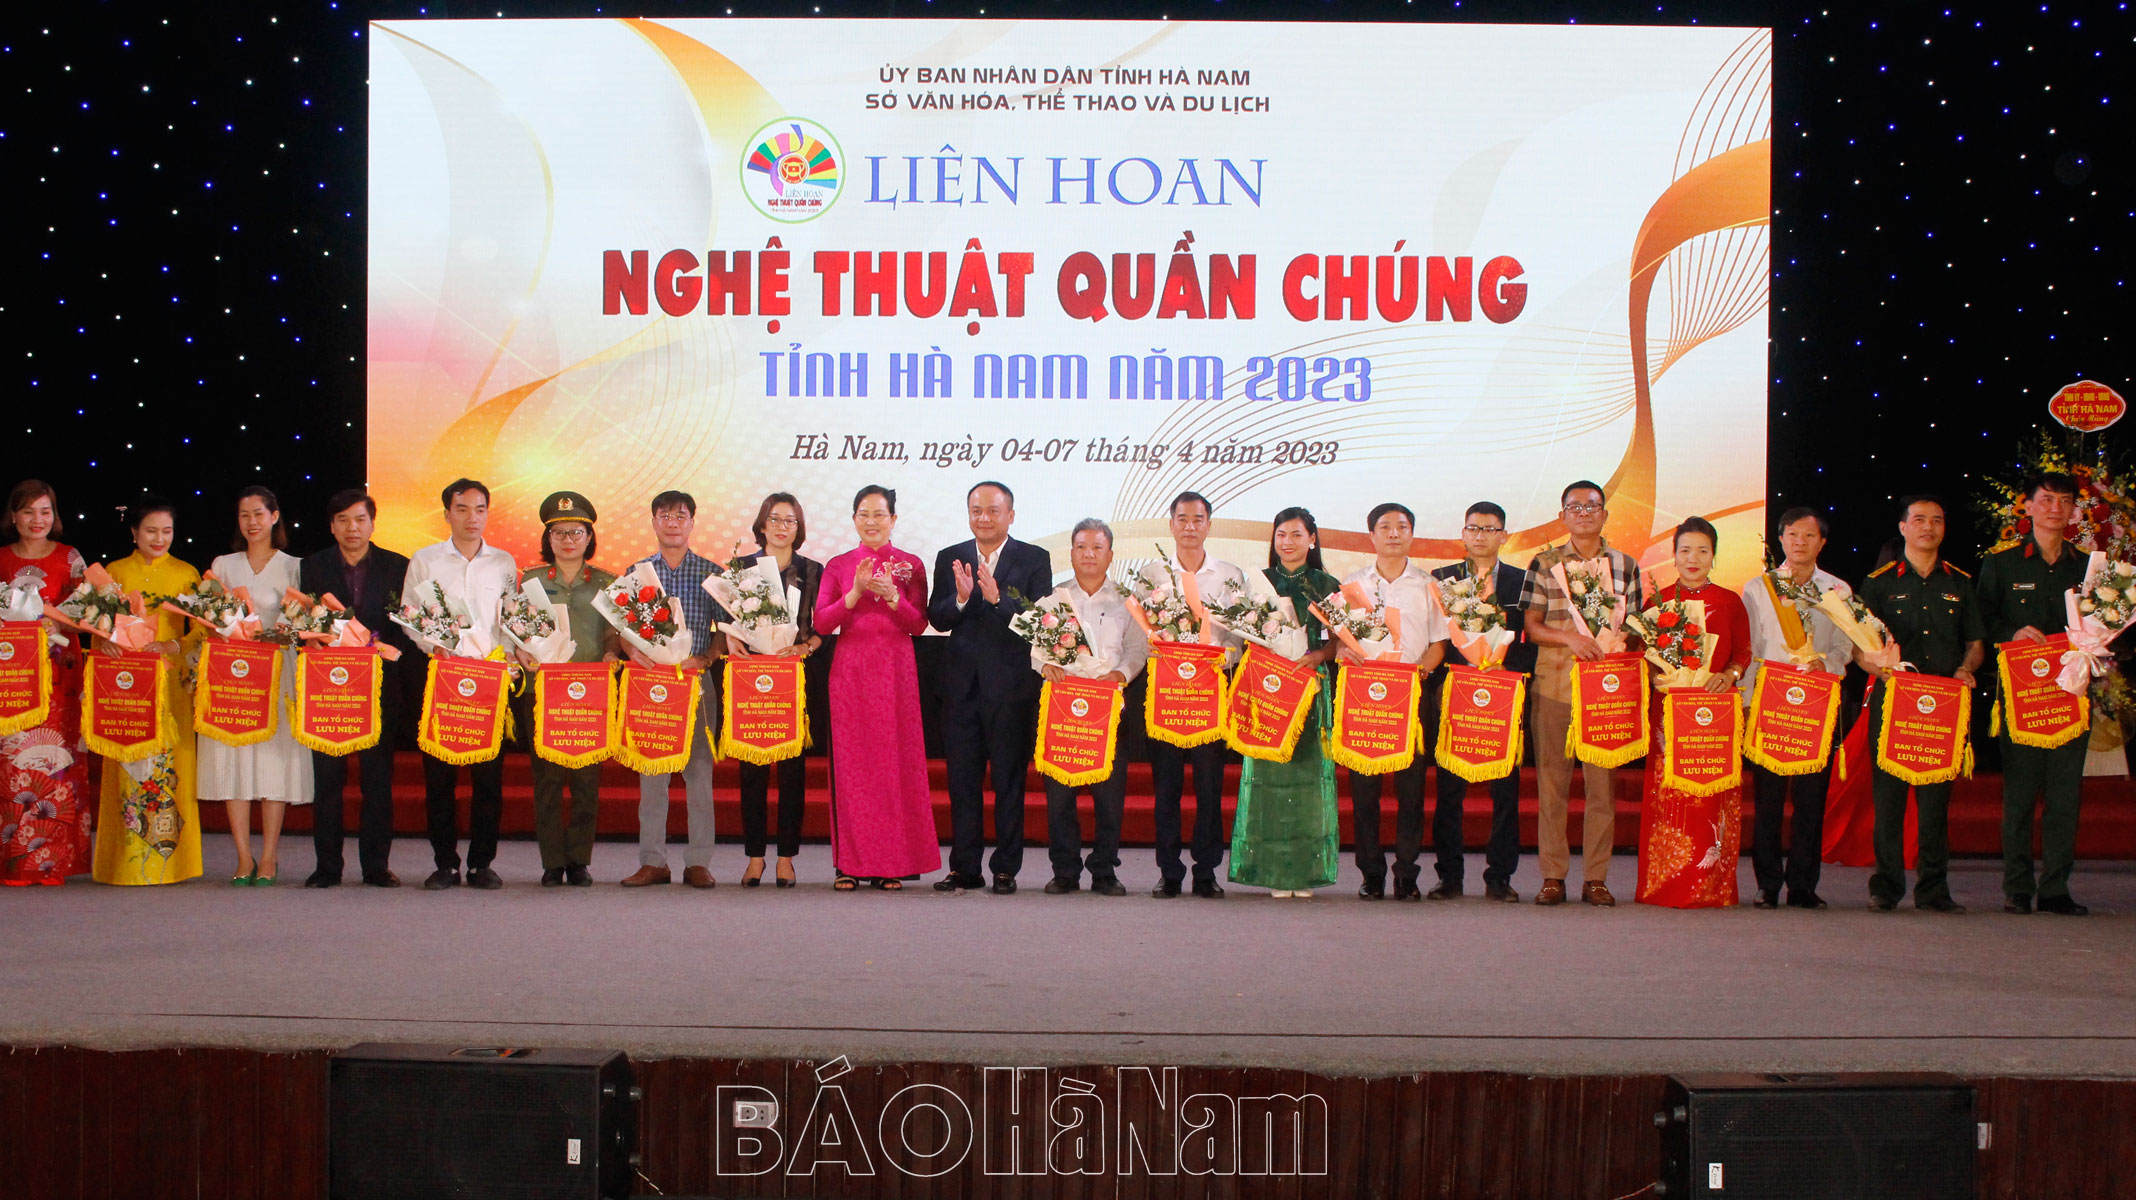 Khai mạc Liên hoan Nghệ thuật quần chúng tỉnh Hà Nam năm 2023